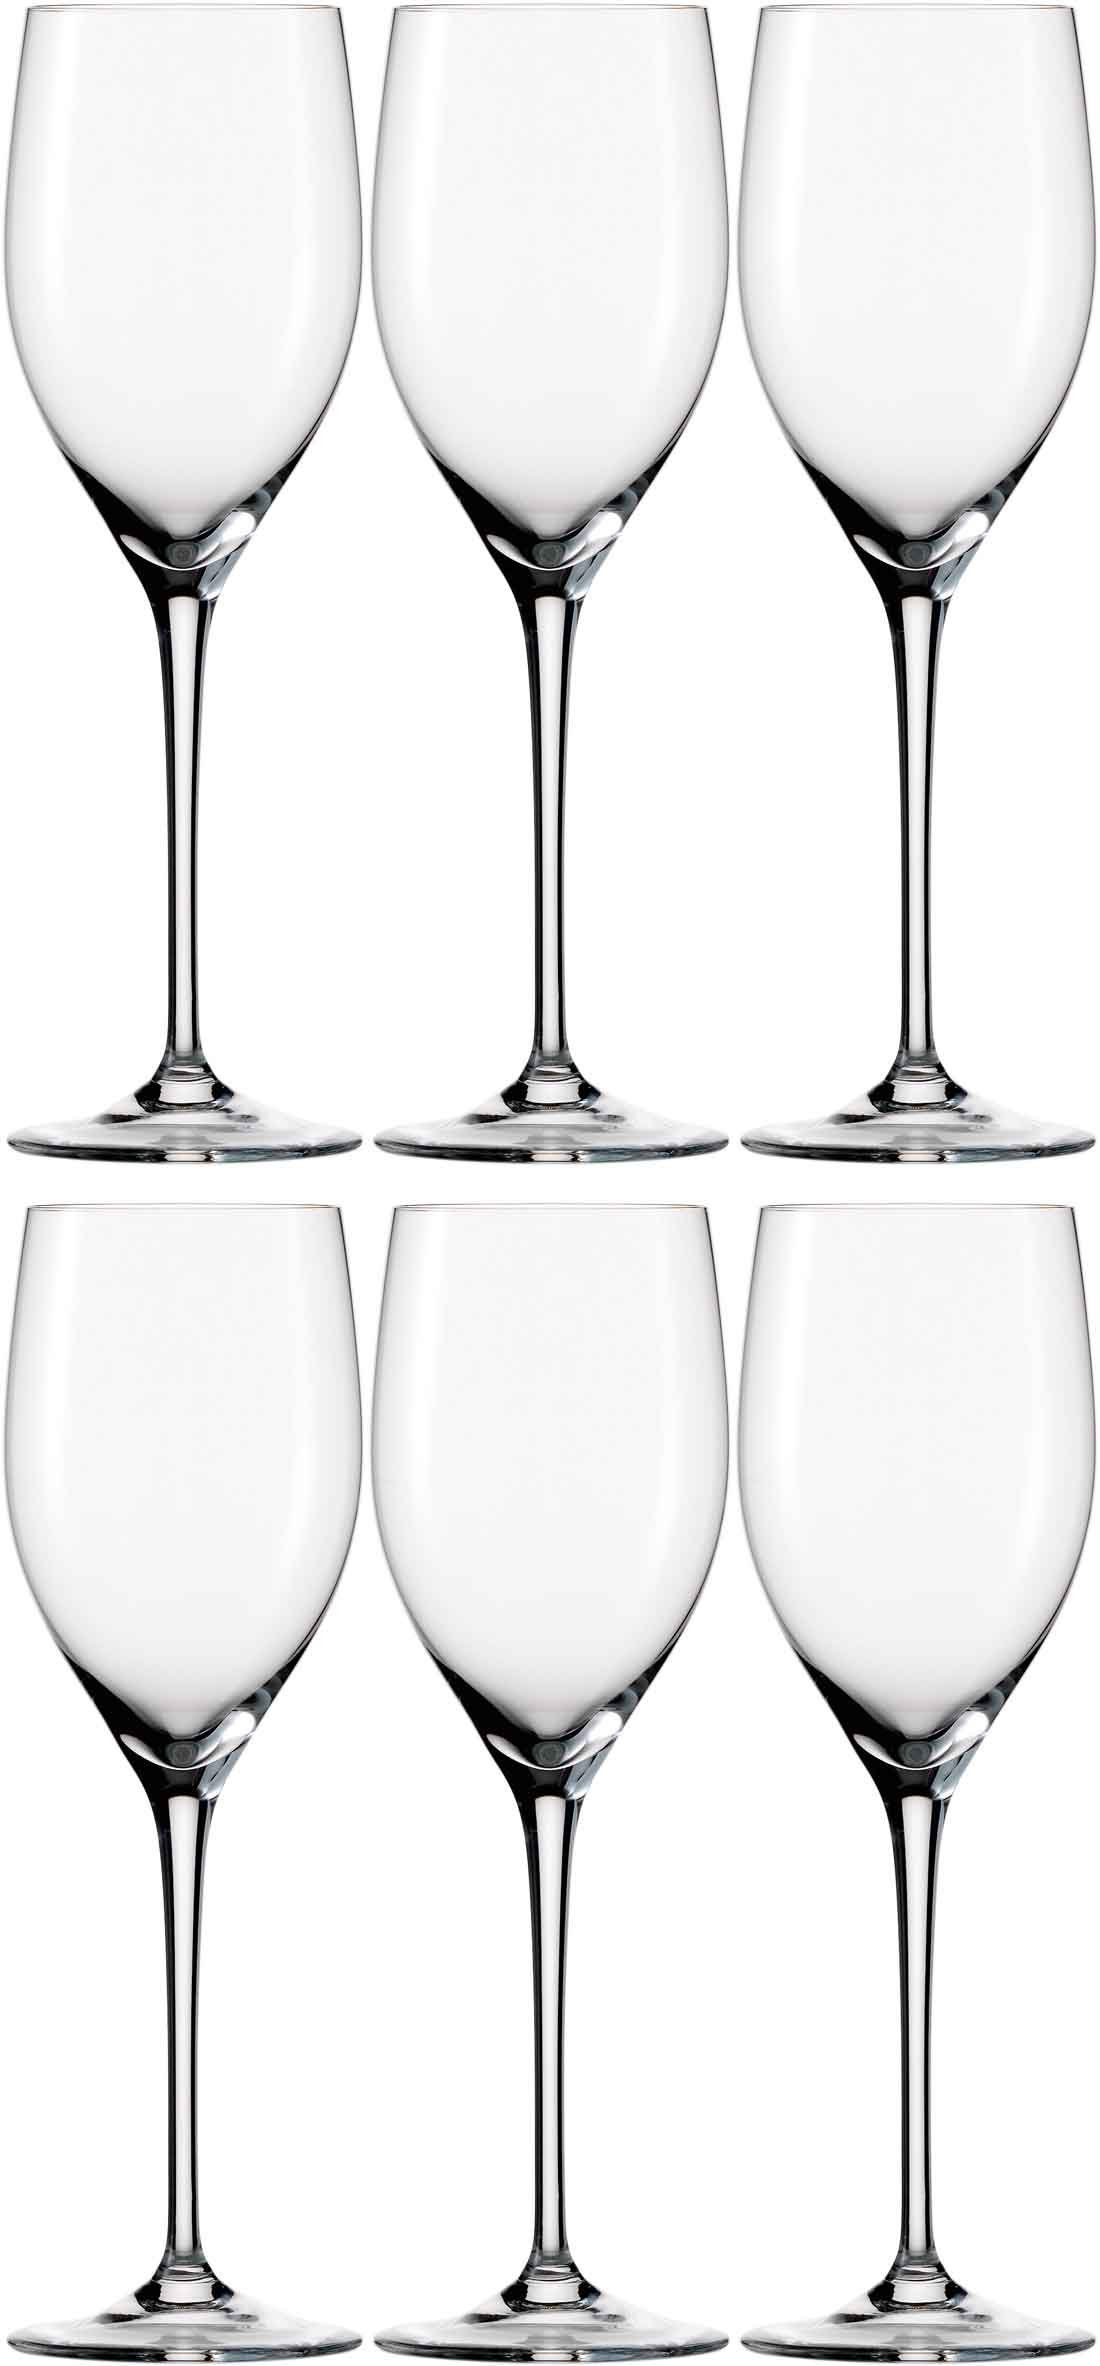 Dekomiro Weinglas Glashütte Eisch 6er Set Melissa Weinglas 547/0, Kristallglas